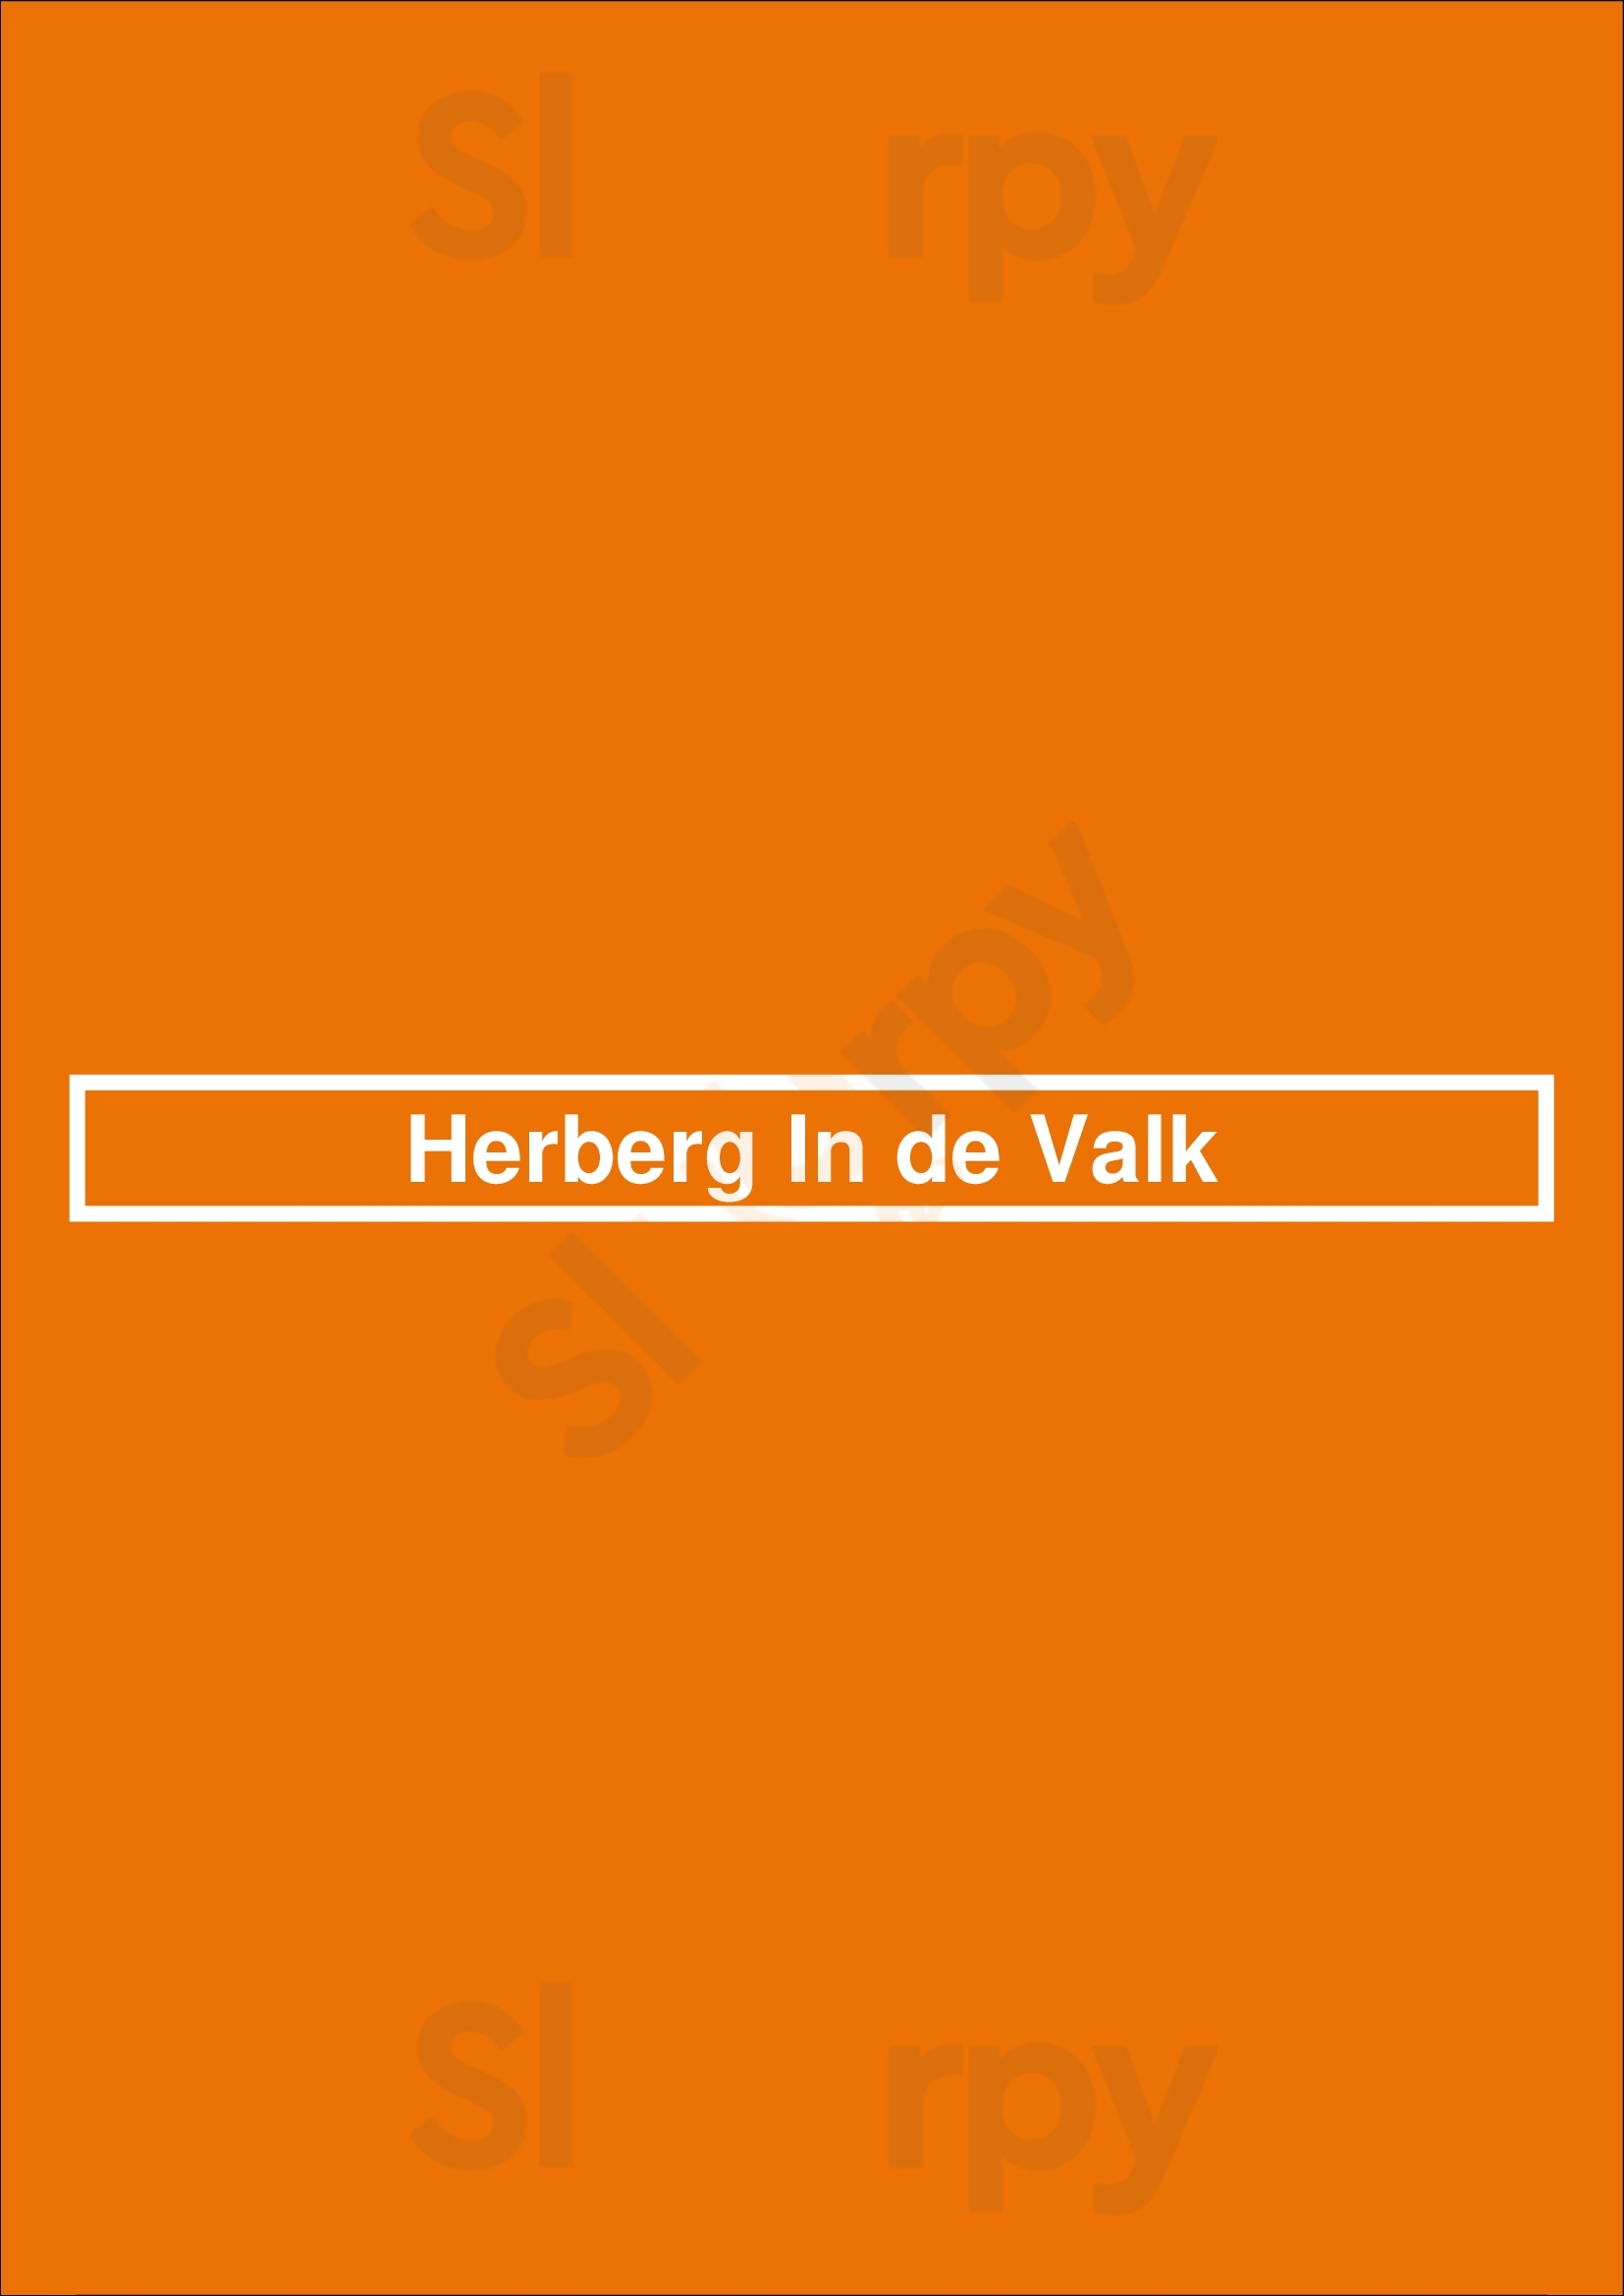 Herberg In De Valk Groningen Menu - 1